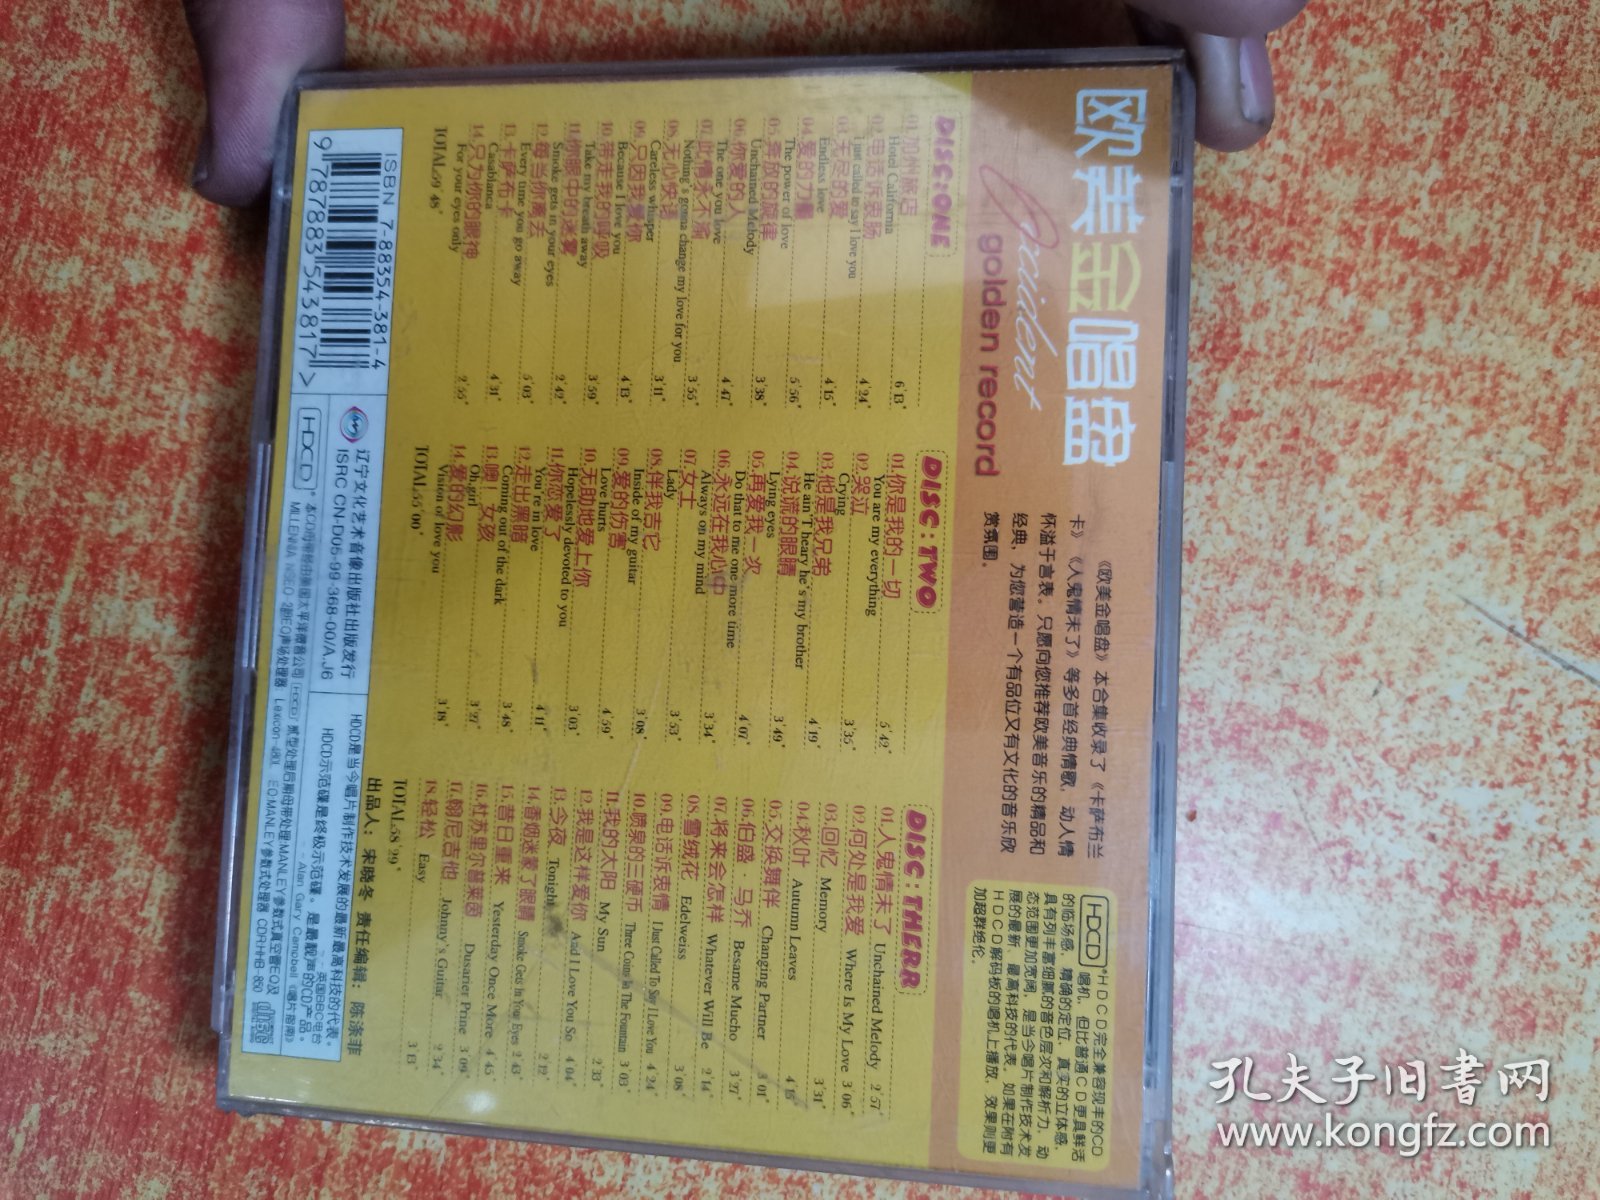 CD 光盘 3碟 欧美金唱盘